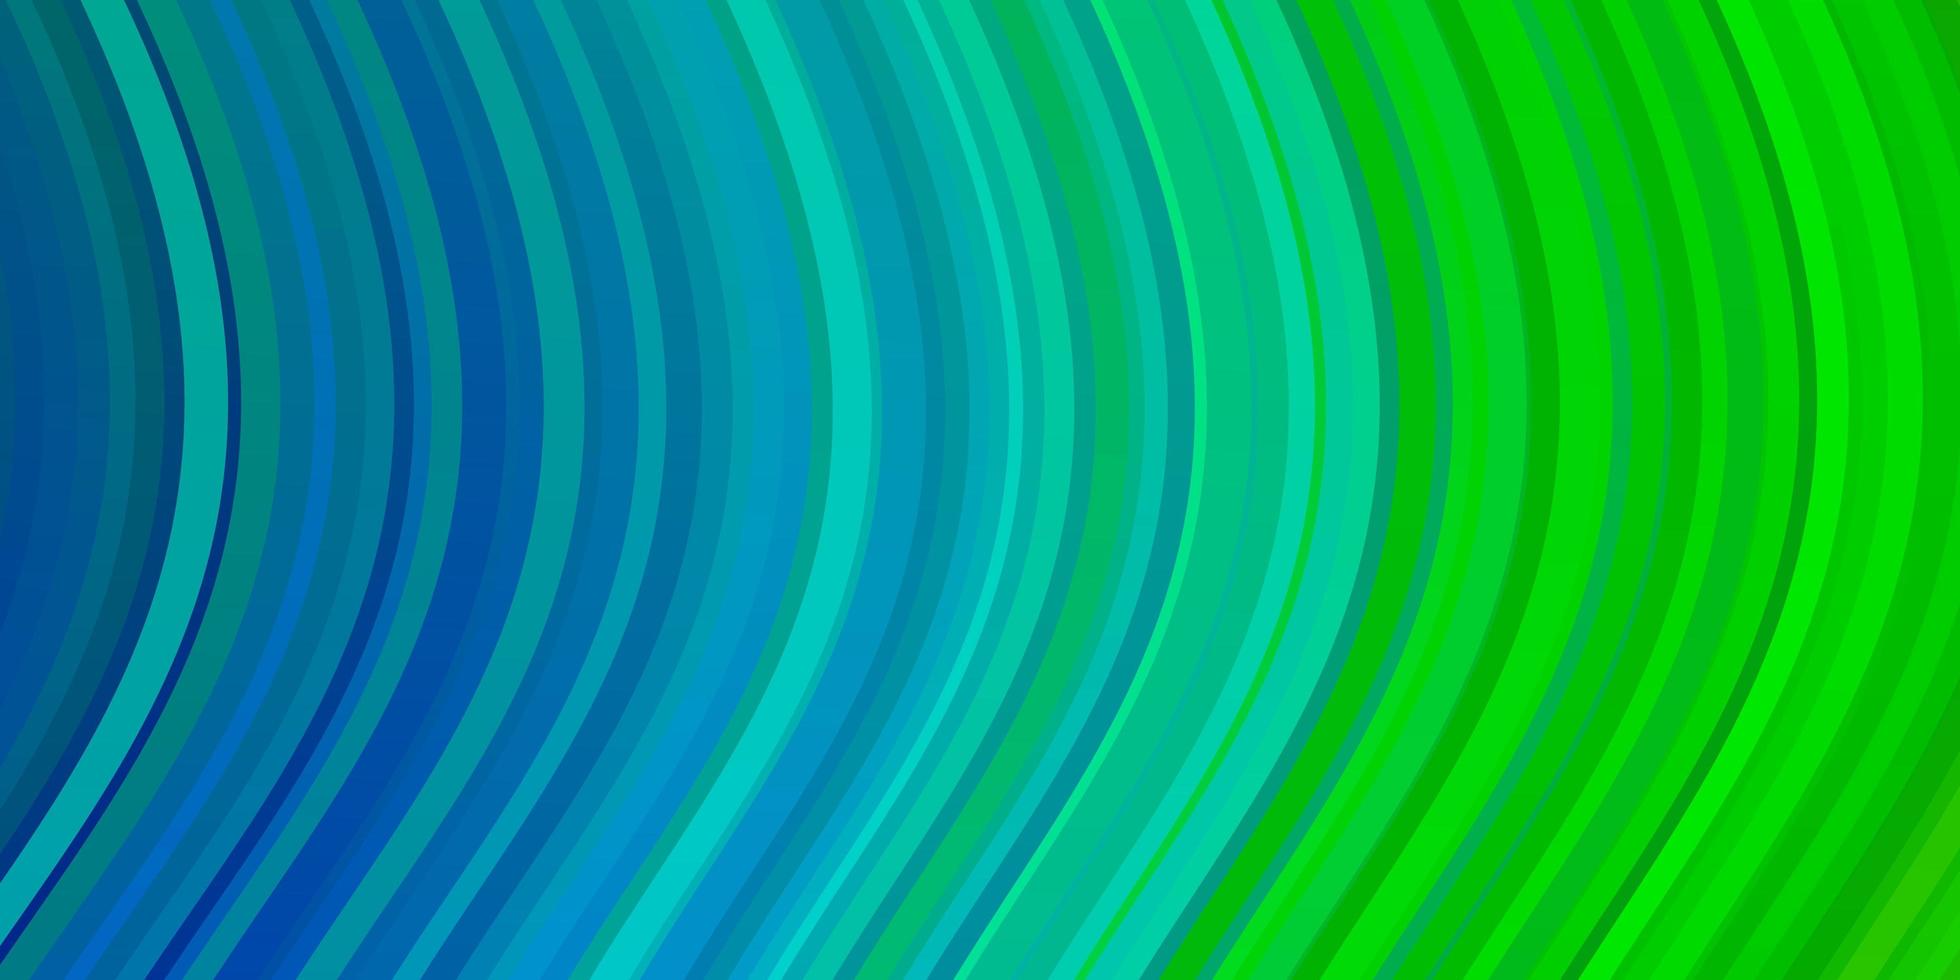 Fondo de vector azul claro, verde con arcos.